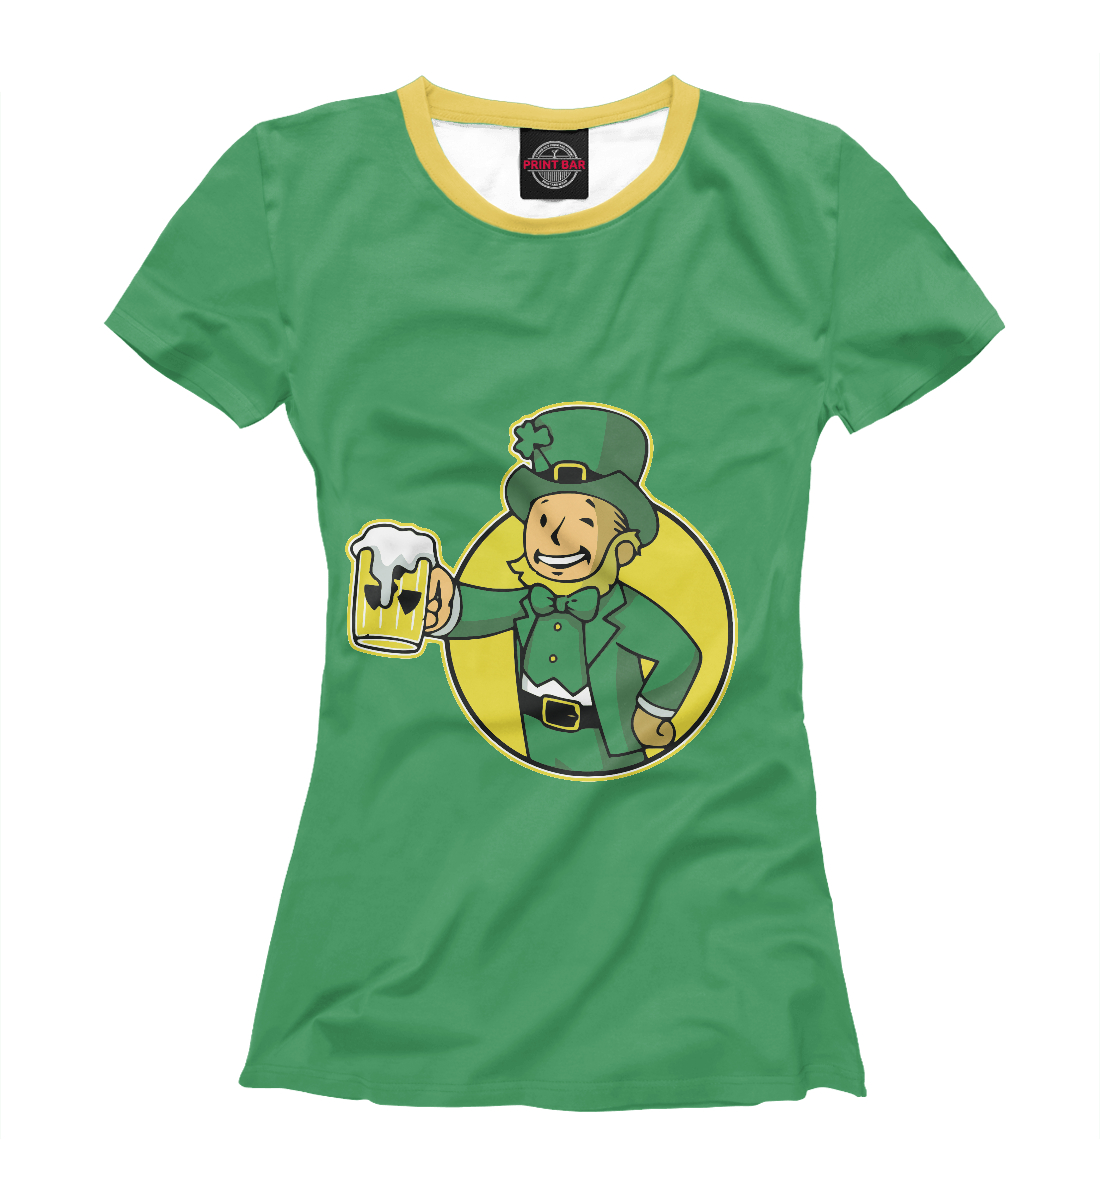 Футболка Irish Vault Boy (St. Patrick) для женщин, артикул: FOT-118777-fut-1mp